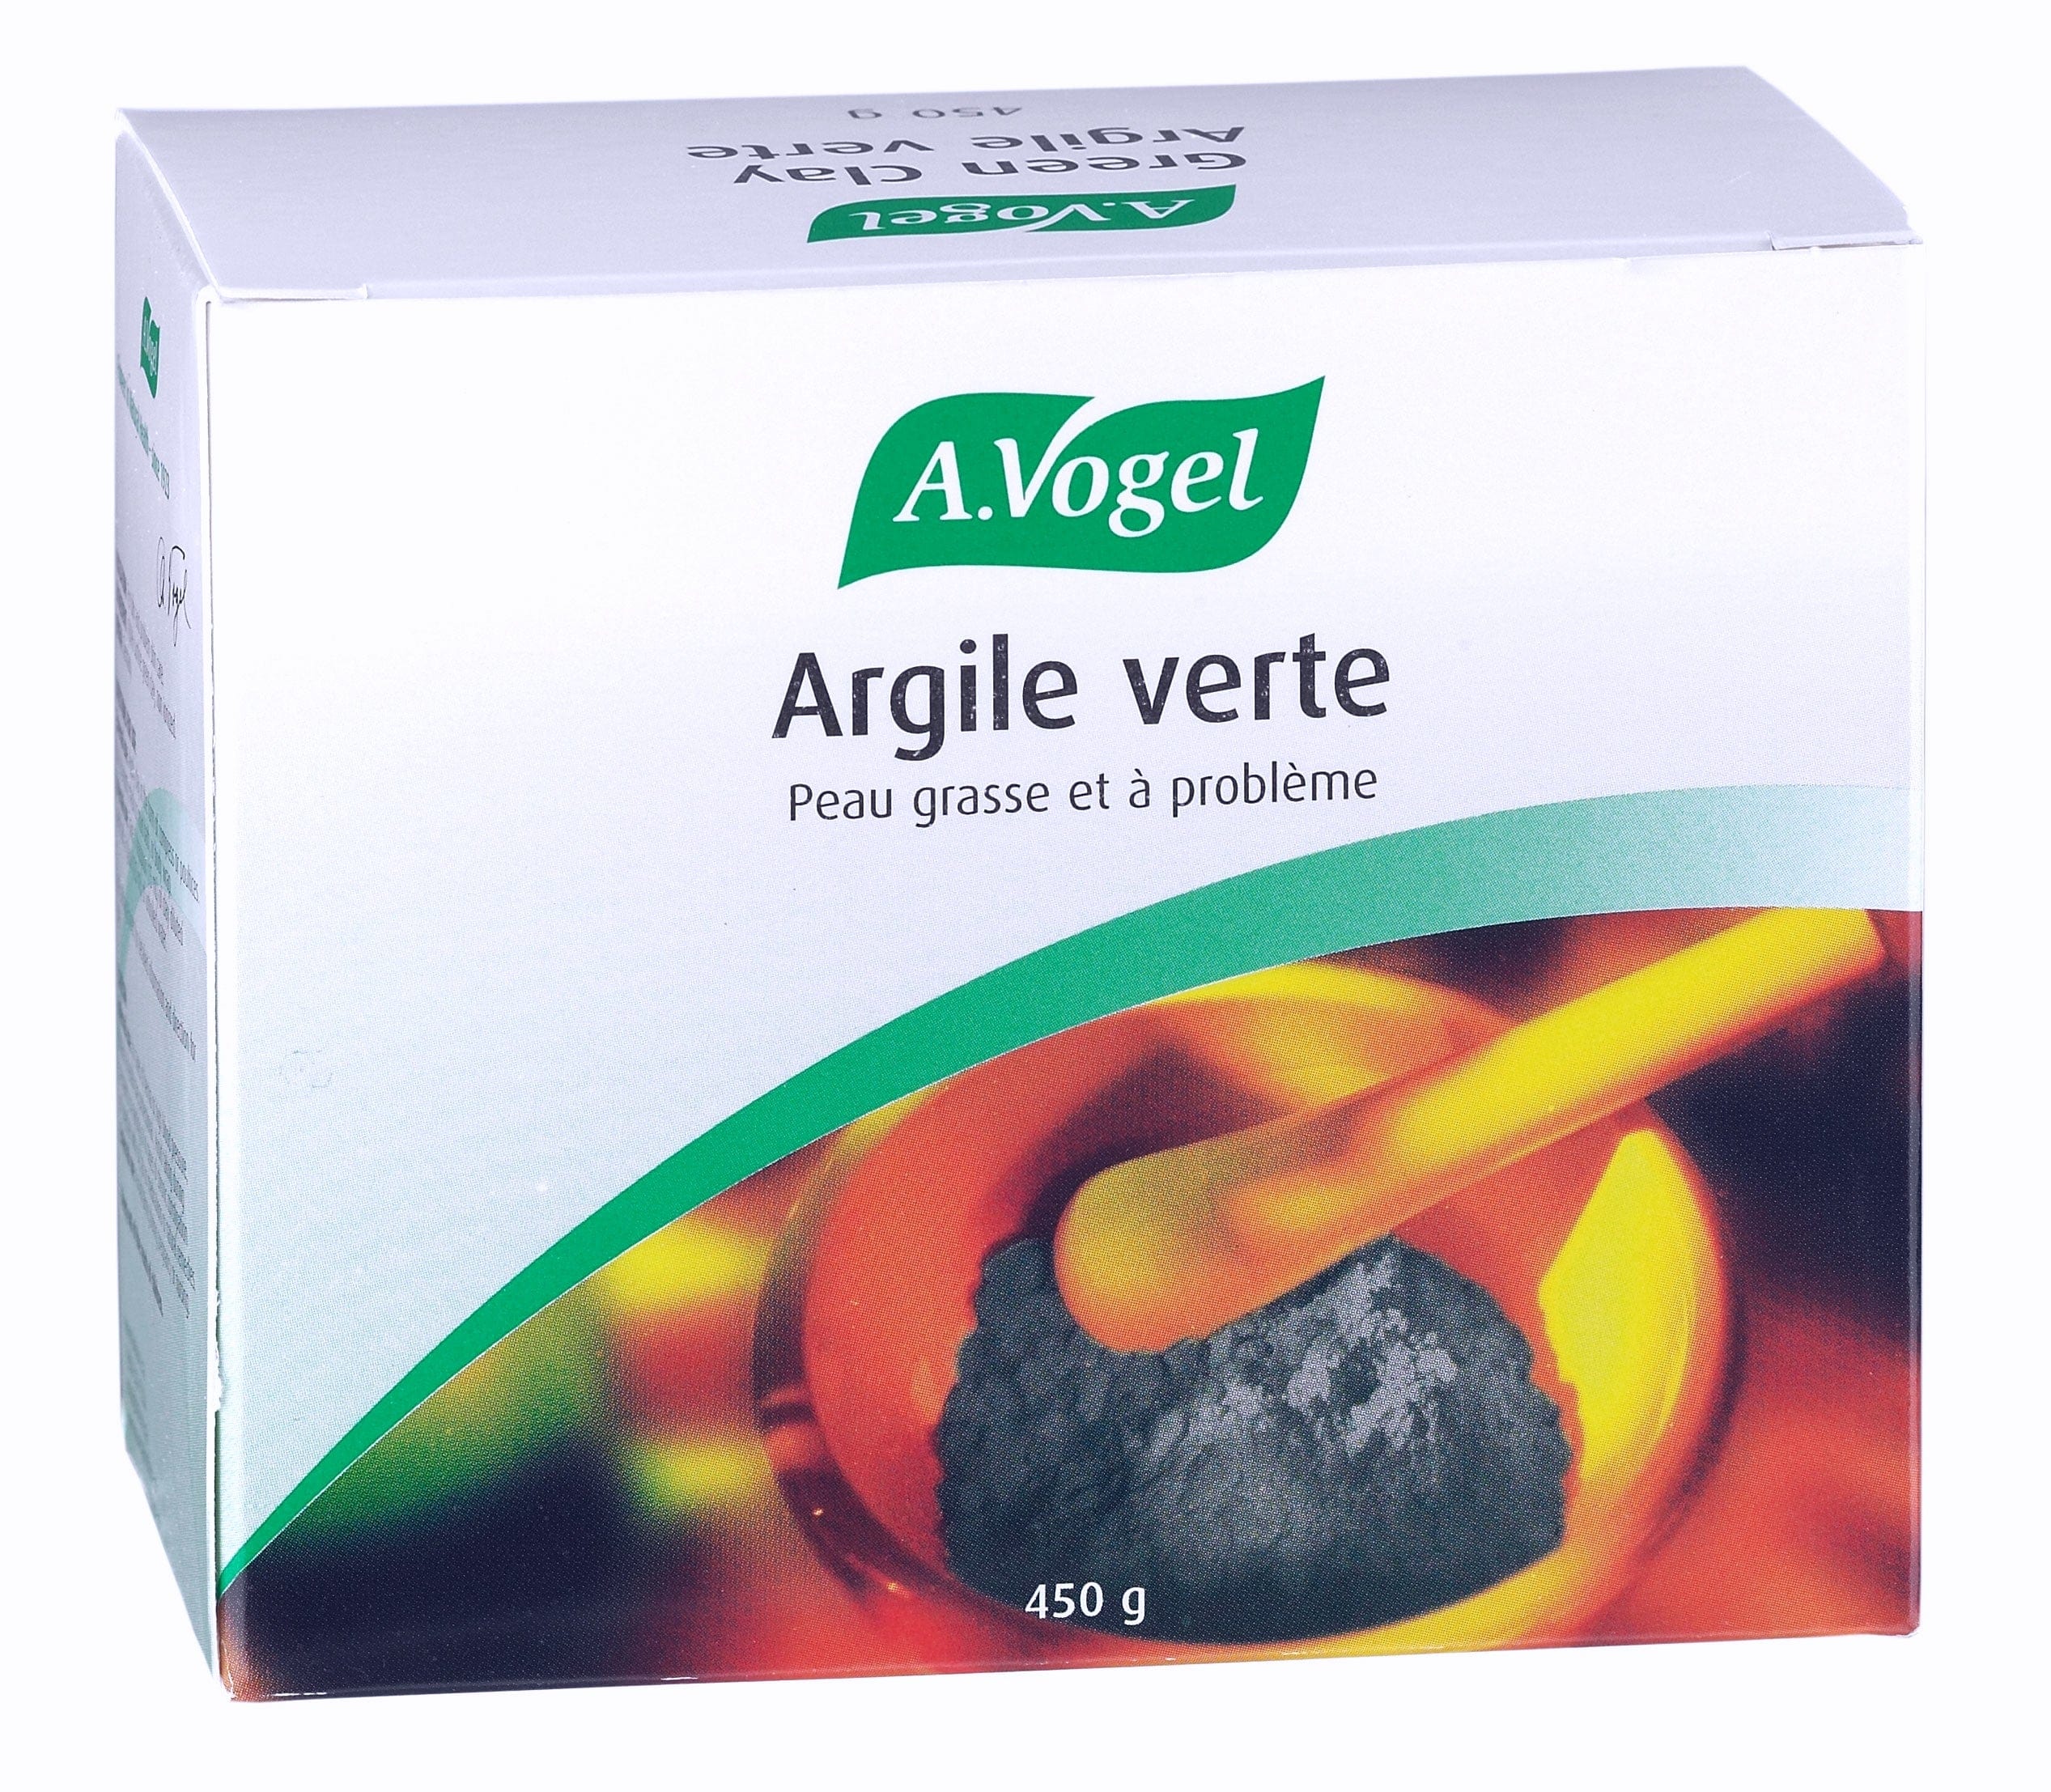 BIOFORCE (A. VOGEL) Soins & beauté Argile verte 450g